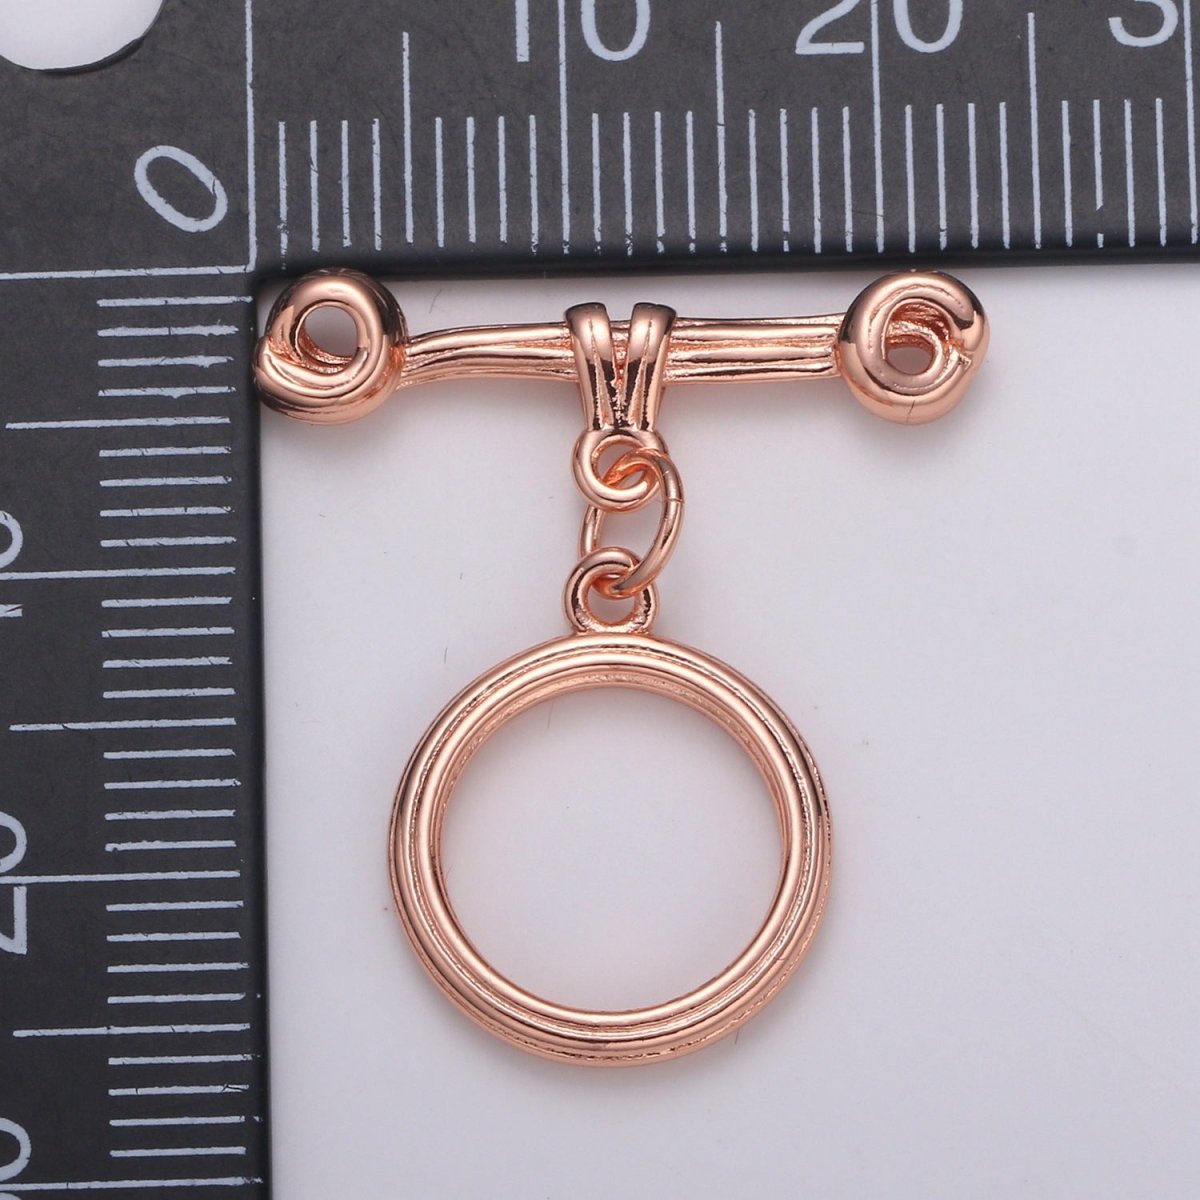 24K Gold Filled Toggle Clasp Black / Rose Gold / Gold / Silver For DIY Jewelry Making Necklace Bracelet Anklet L-217~L-220 - DLUXCA